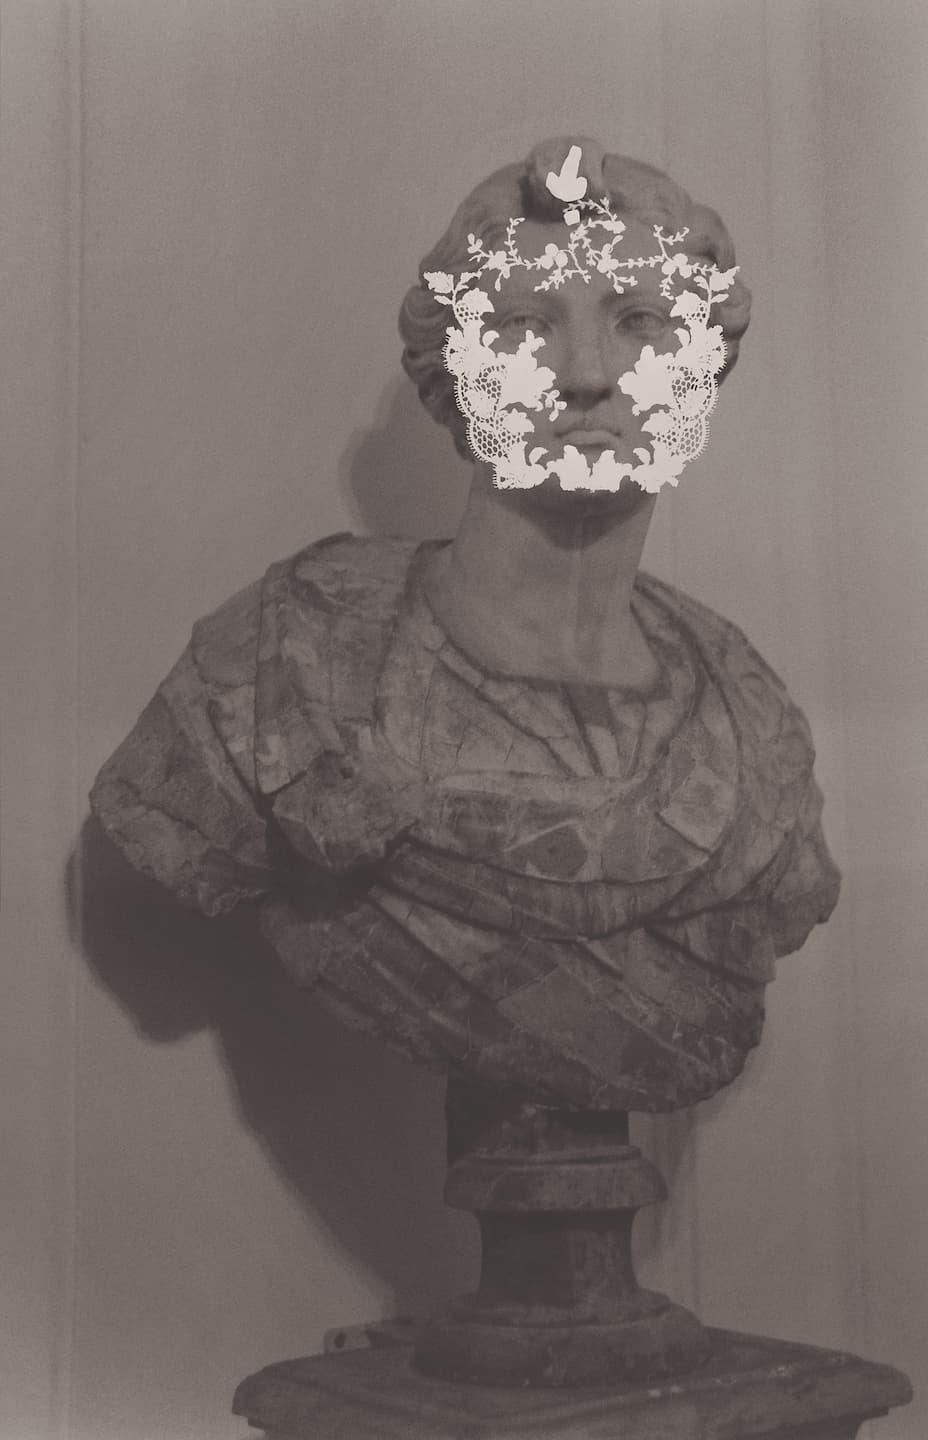 Anita Gauran, (Sans titre), 2020. Photographie argentique noir et blanc sur papier baryté, 90 x 58 cm. Achat à l’artiste. Collection Frac Bretagne. © droits réservés